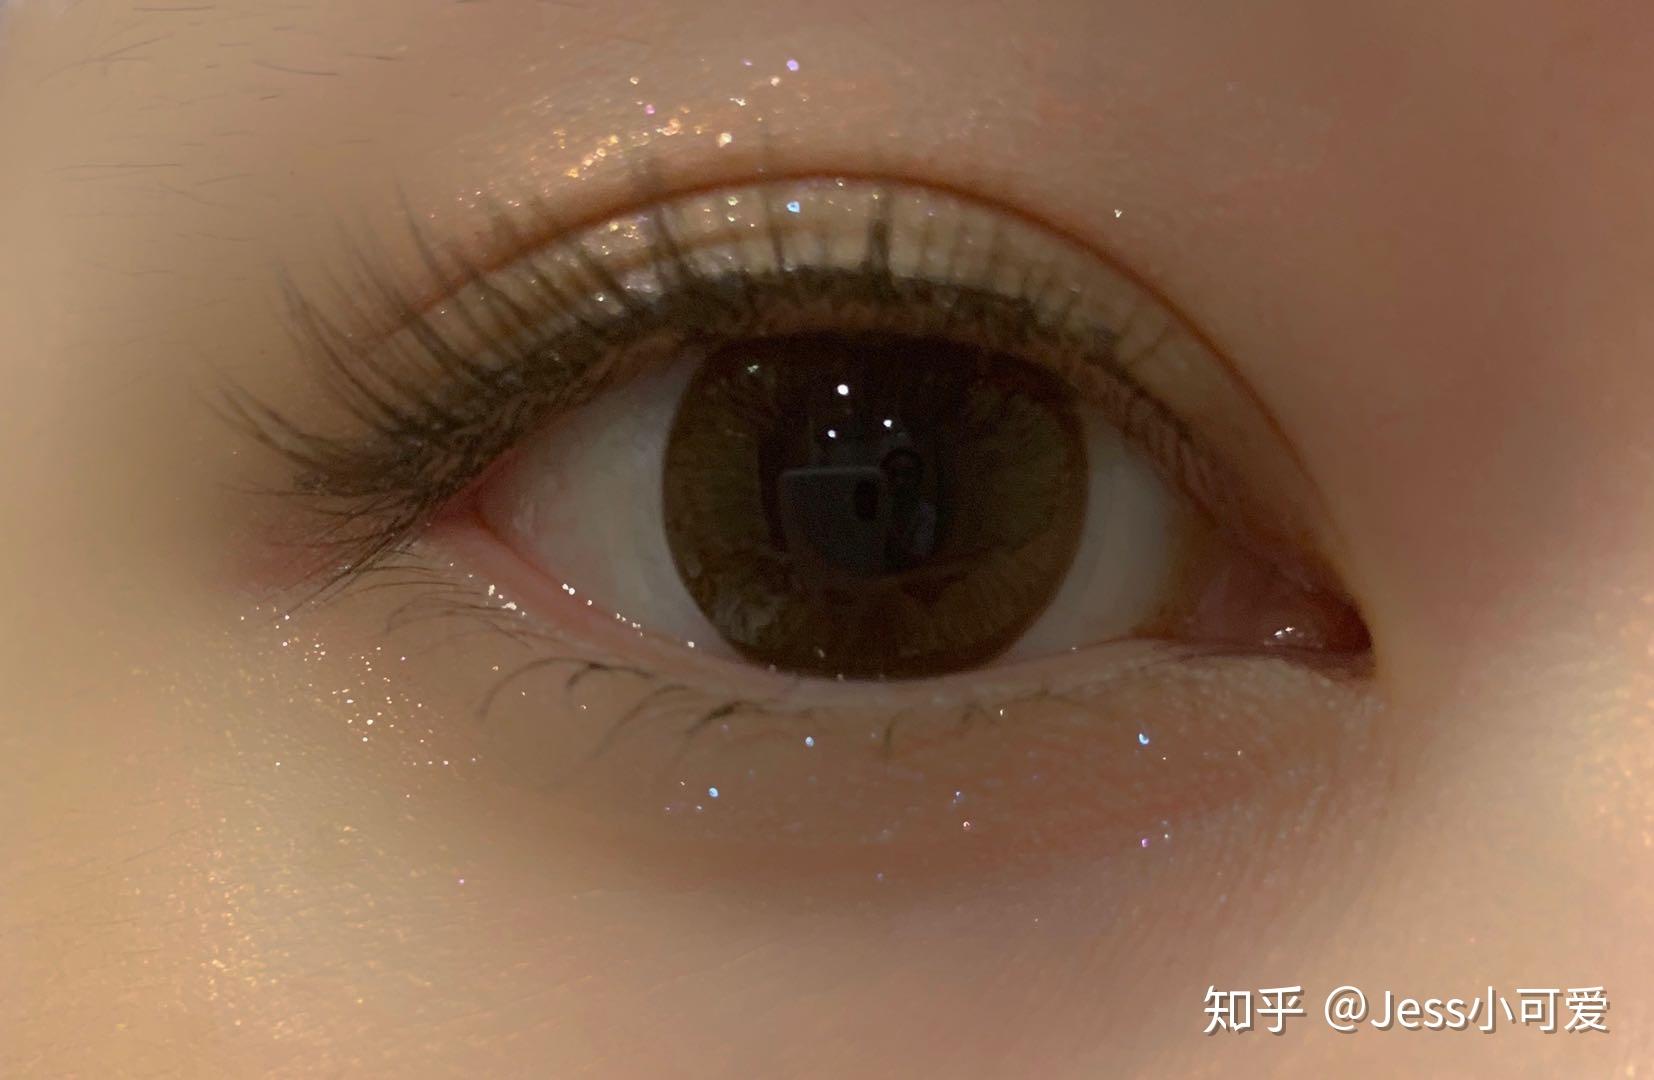 【2020最后一个班】美睫-睫毛嫁接课-上海新东坊美容化妆培训学校